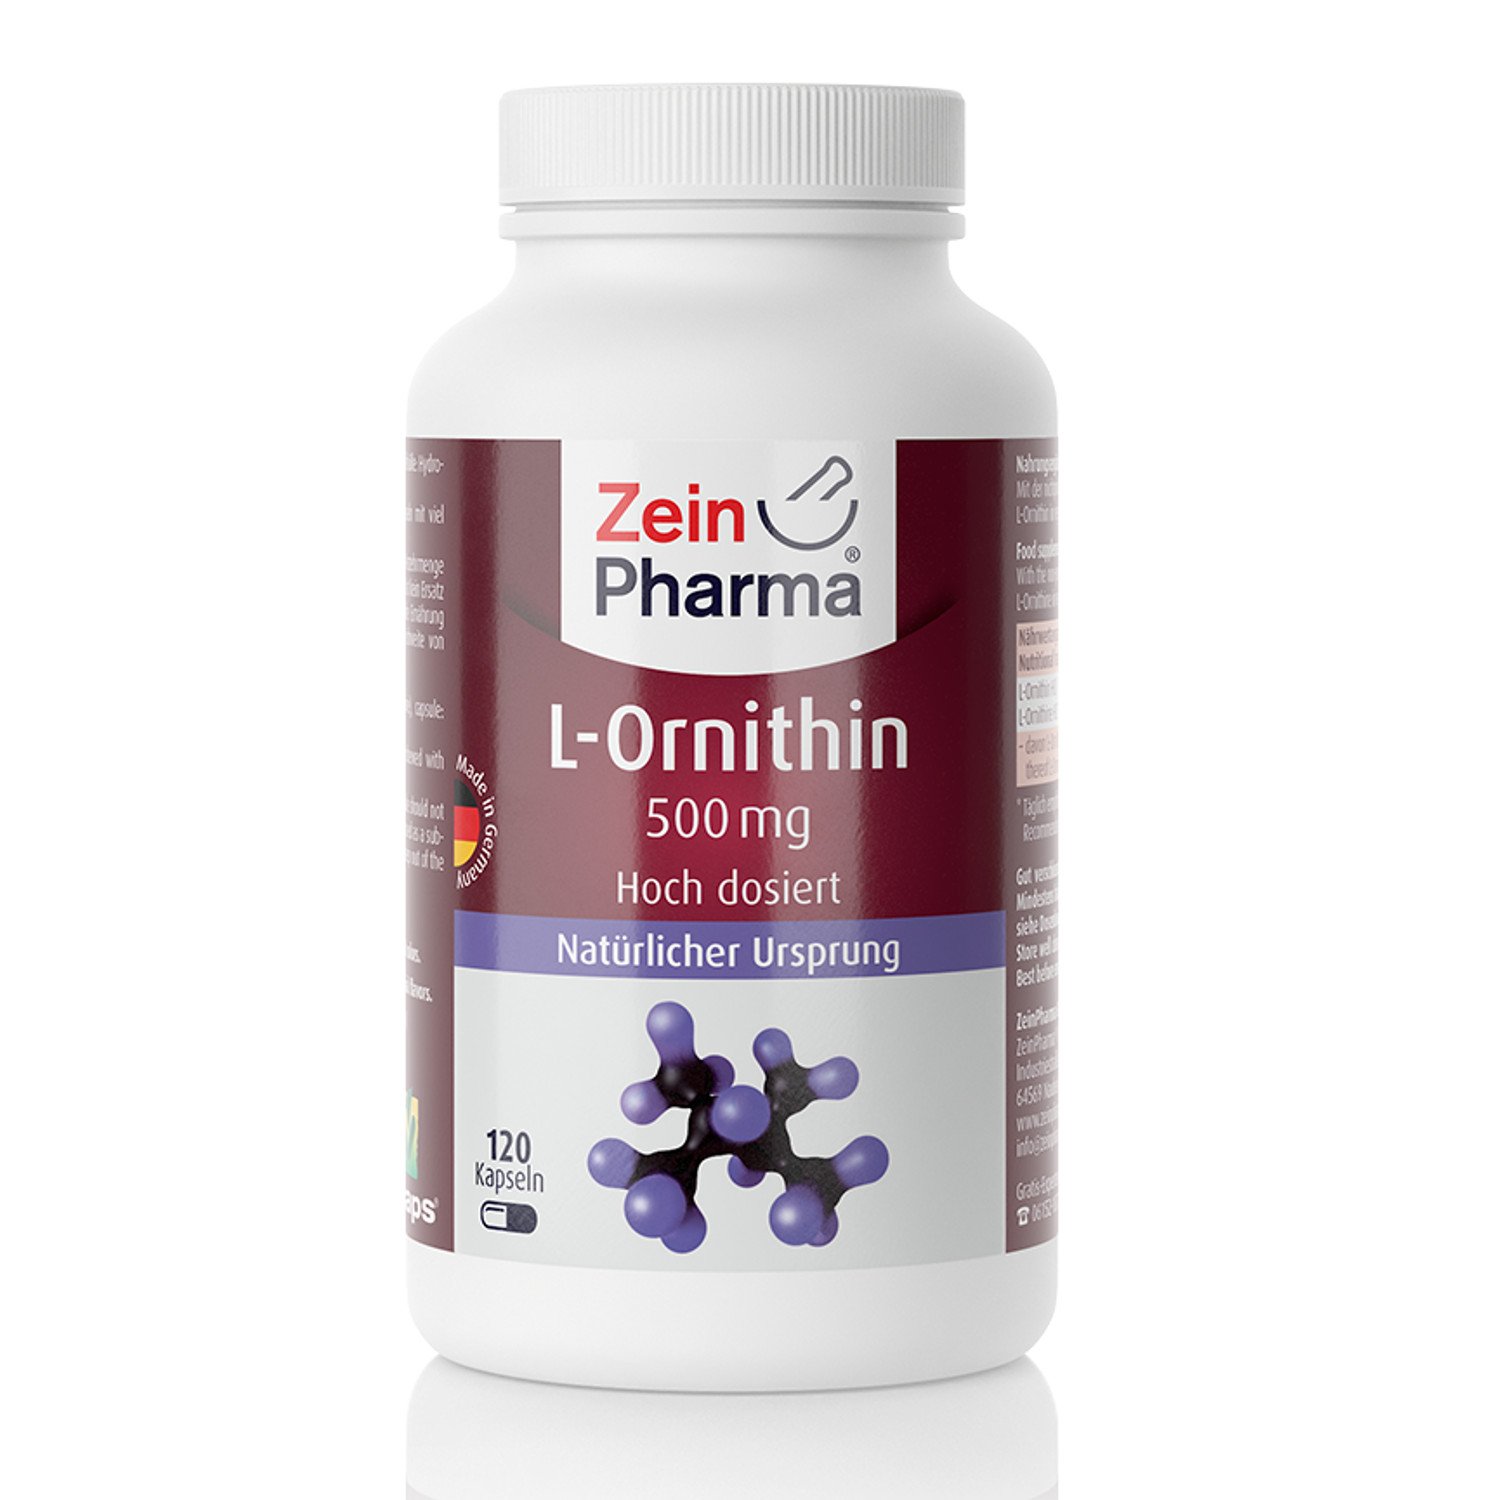 ZeinPharma L-Ornithin 500 mg 120 Kapseln (5 Wochen Vorrat) Glutenfrei, vegan, koscher & halal Hergestellt in Deutschland, 74 g